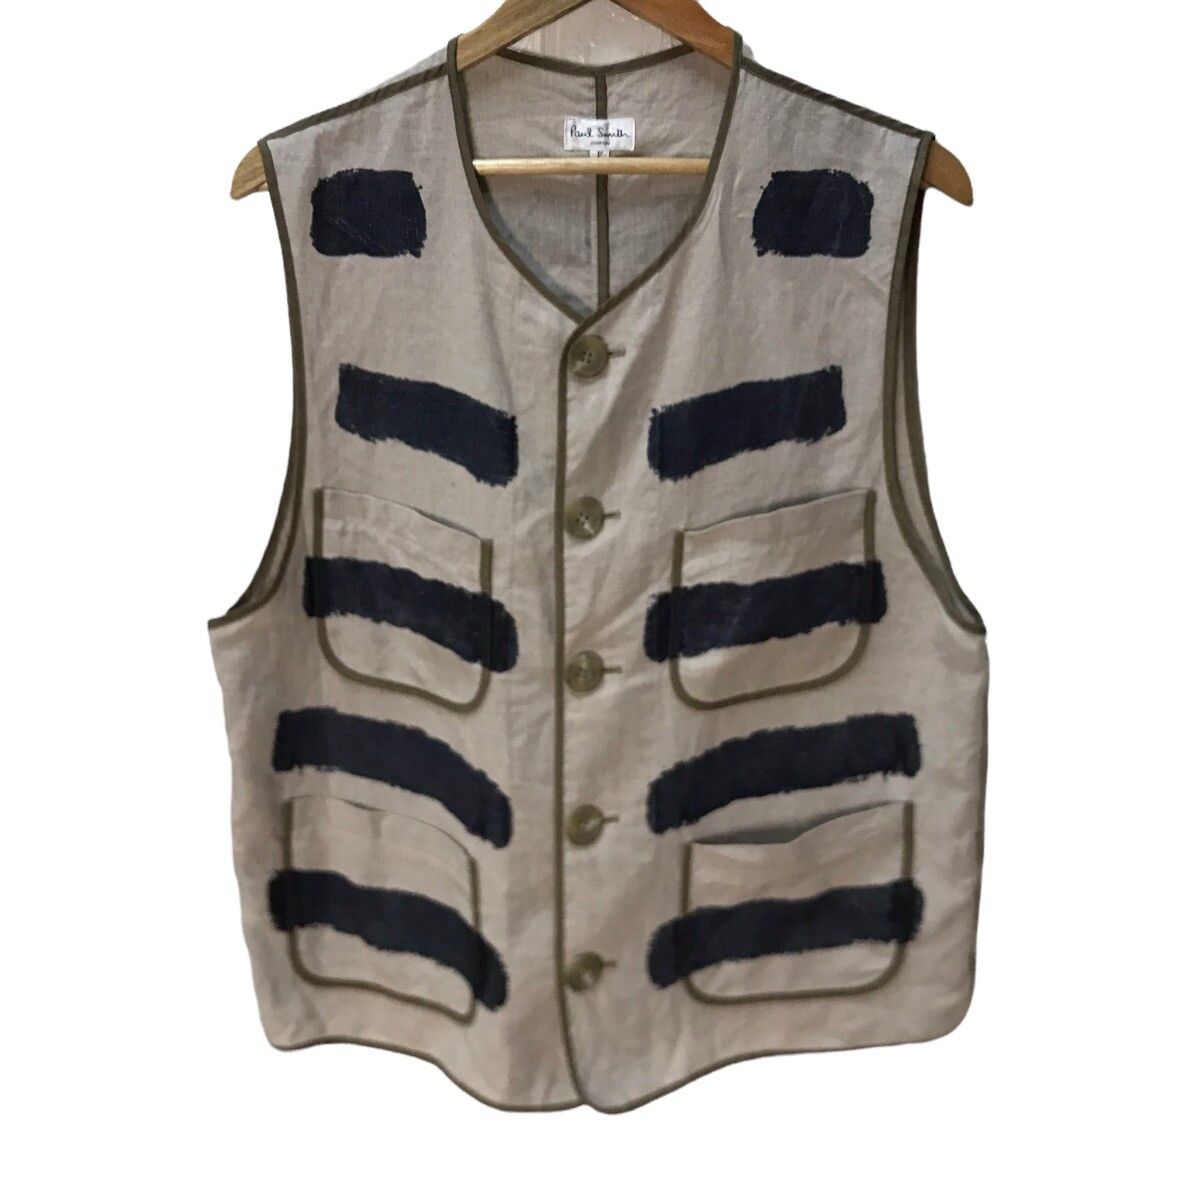 Paul smith indigo hand paint vest jacket - 1